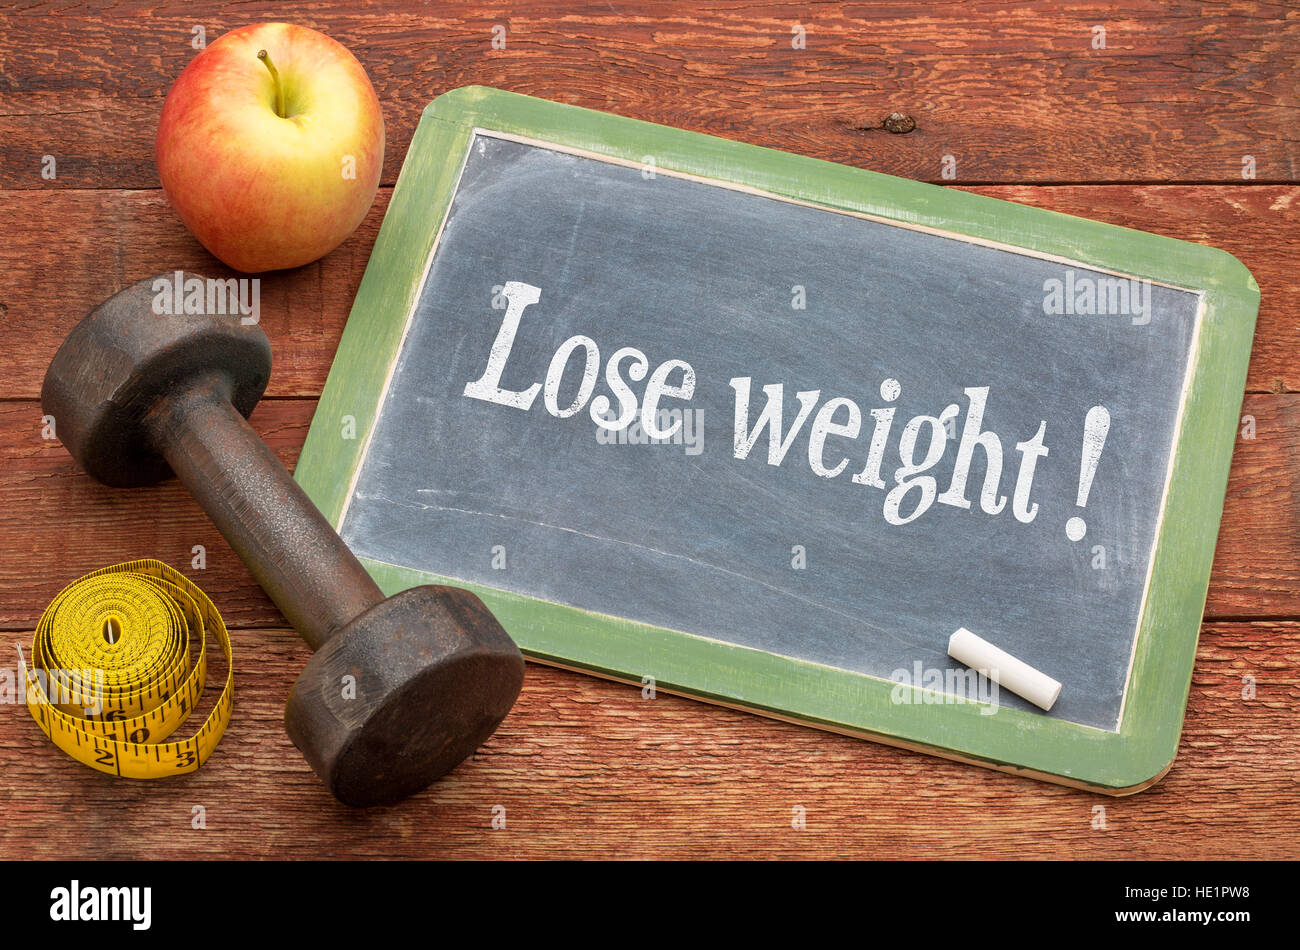 Verlieren Sie Gewicht Konzept - Schiefer Tafel Zeichen gegen verwitterte rot lackierten Scheune Holz mit einer Hantel, Apfel und Maßband Stockfoto